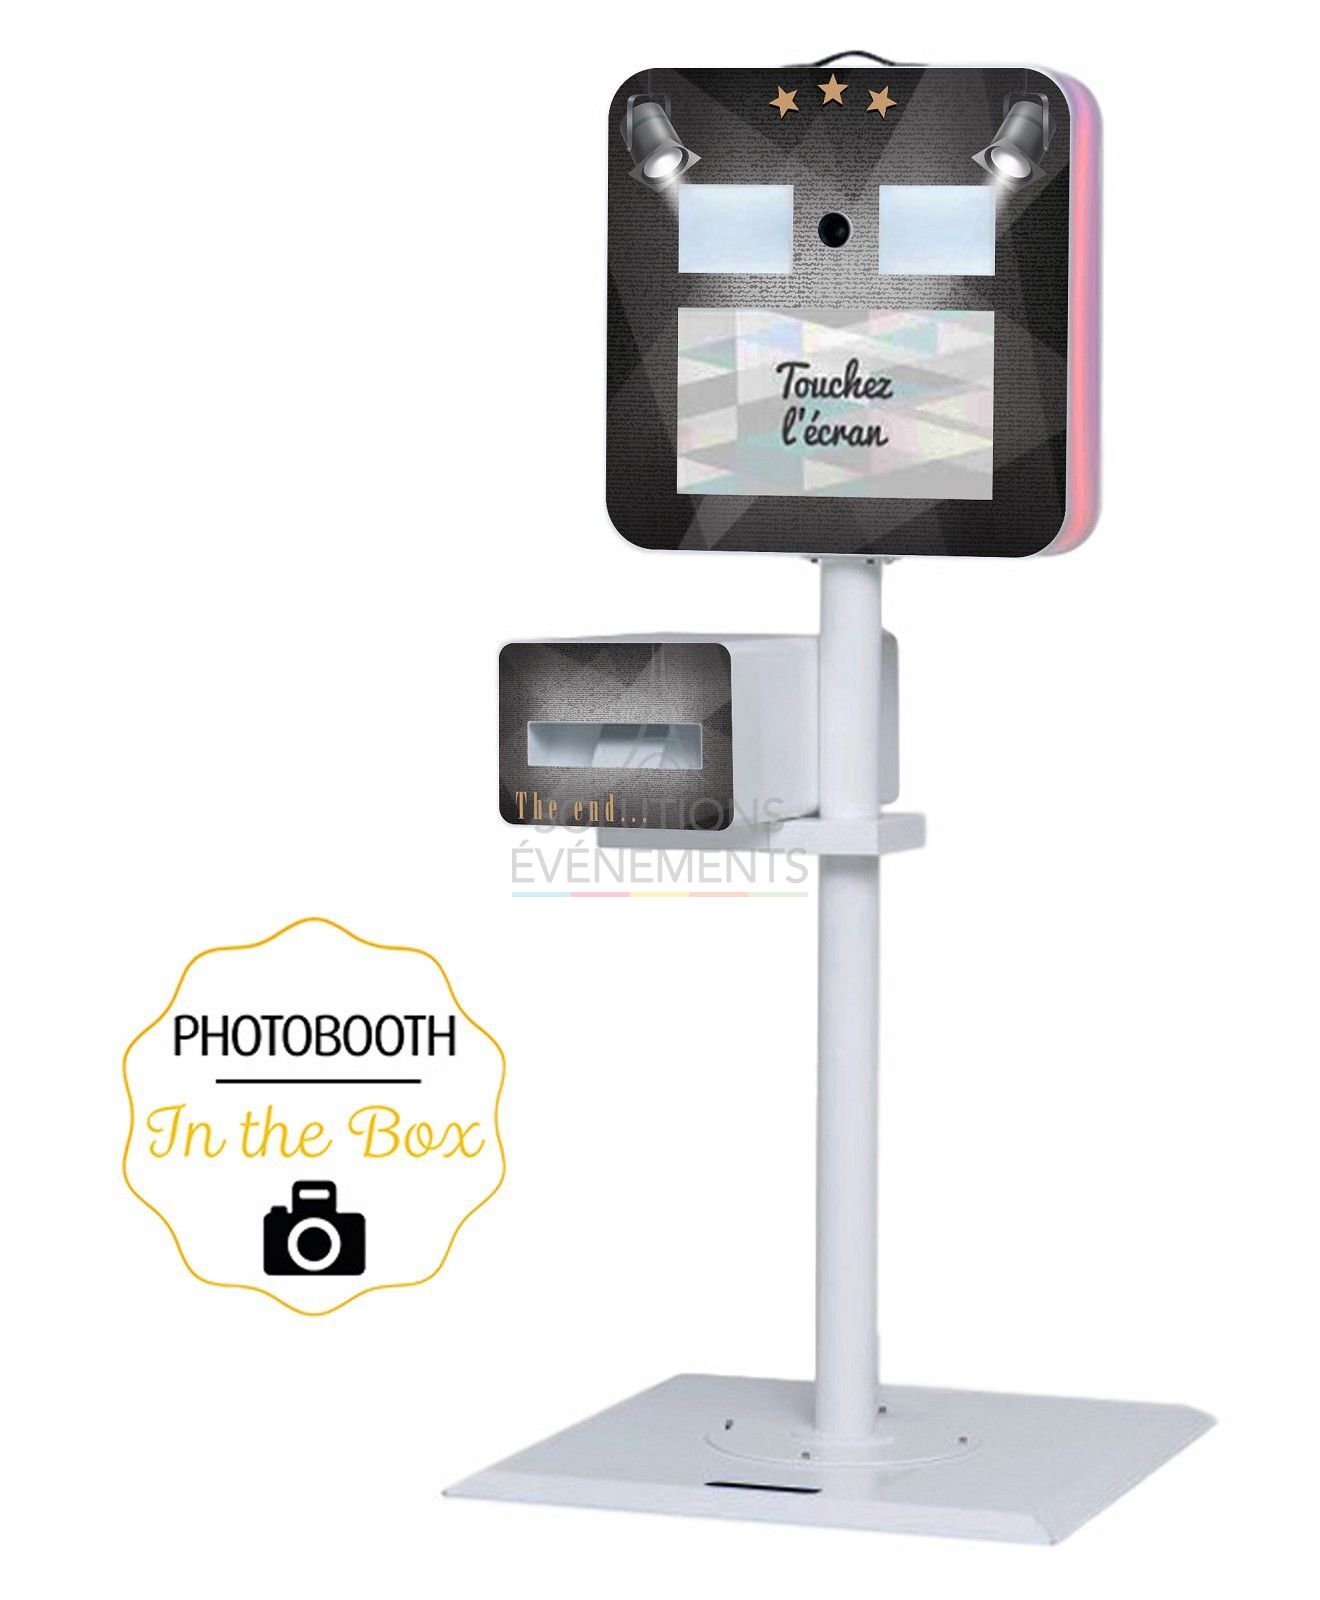 Photobooth rental - instant print selfie terminal